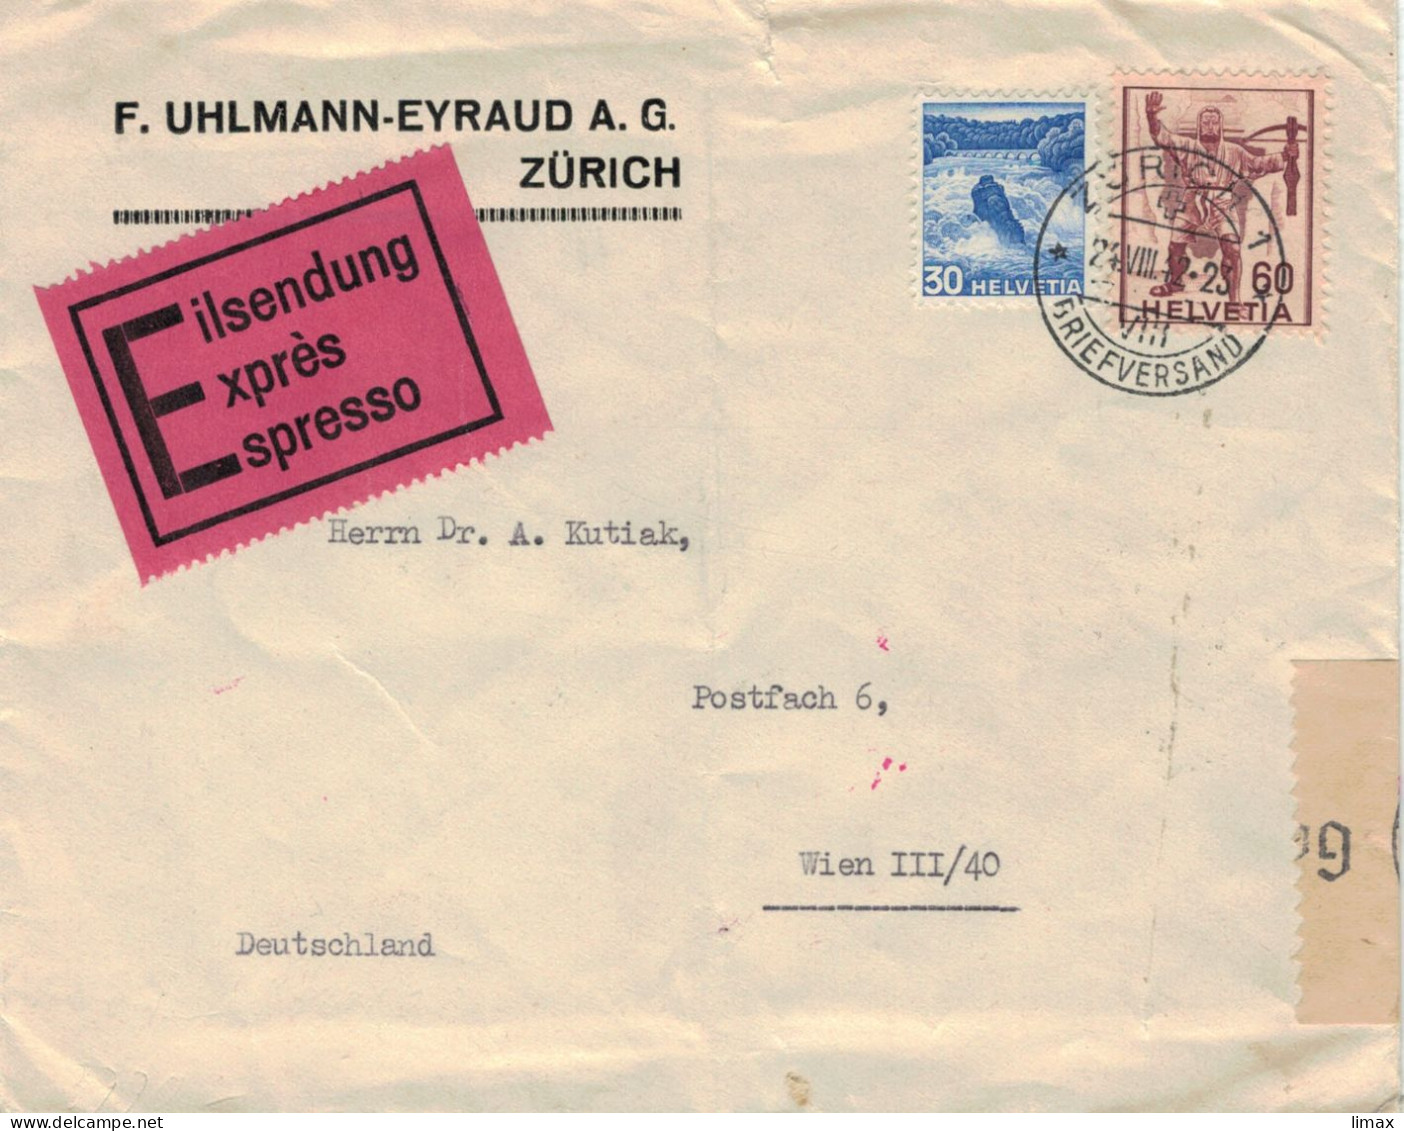 Uhlmann-Eyraud Zürich Briefversand 1942 > Dr. Kutiak Wien - Zensur OKW - Rheinfall Armbrust-Schütze Eilsendung - Lettres & Documents